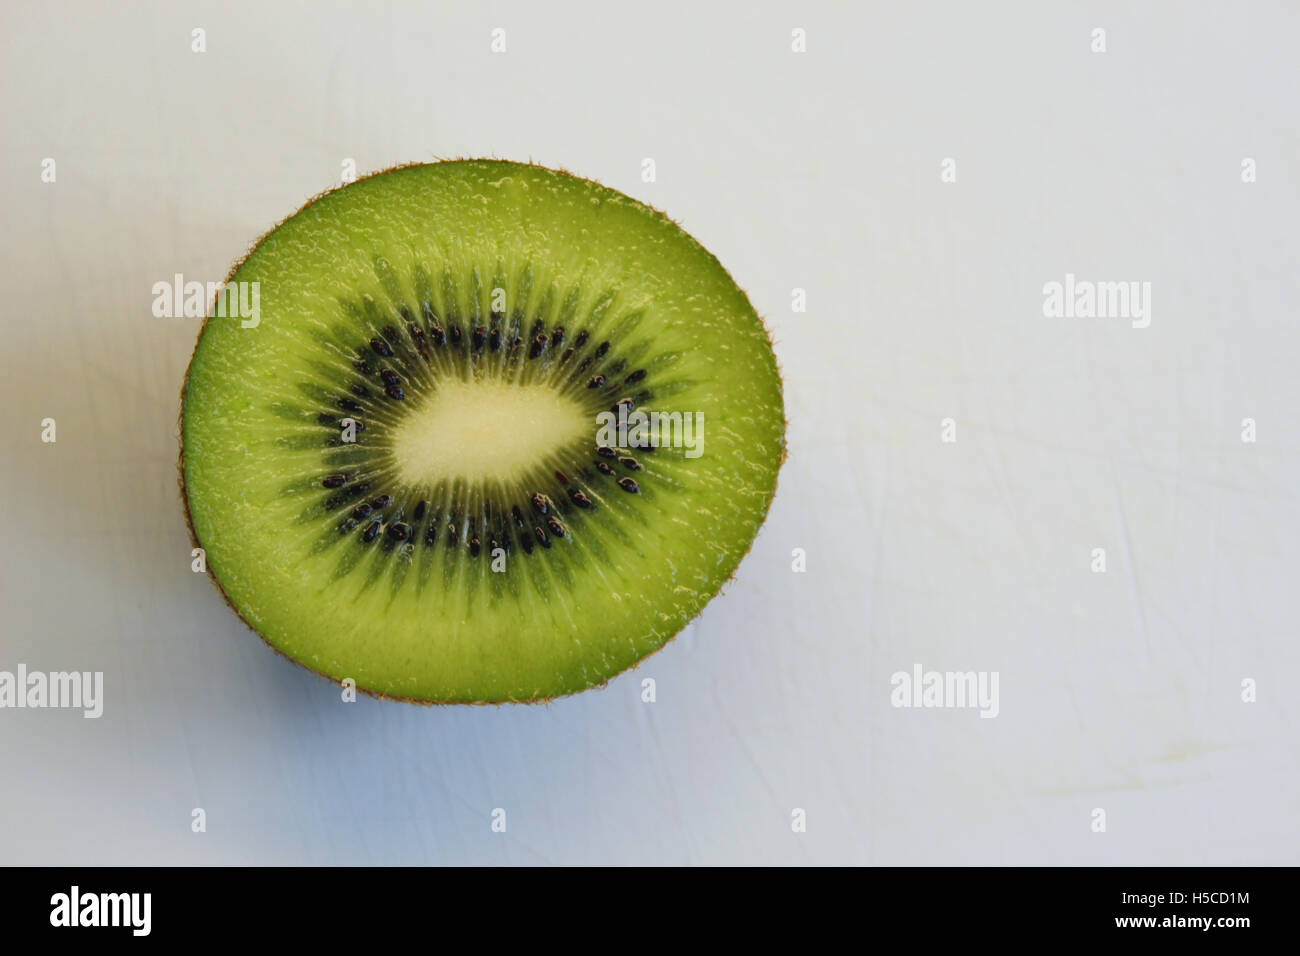 Kiwi fruit sliced Stock Photo